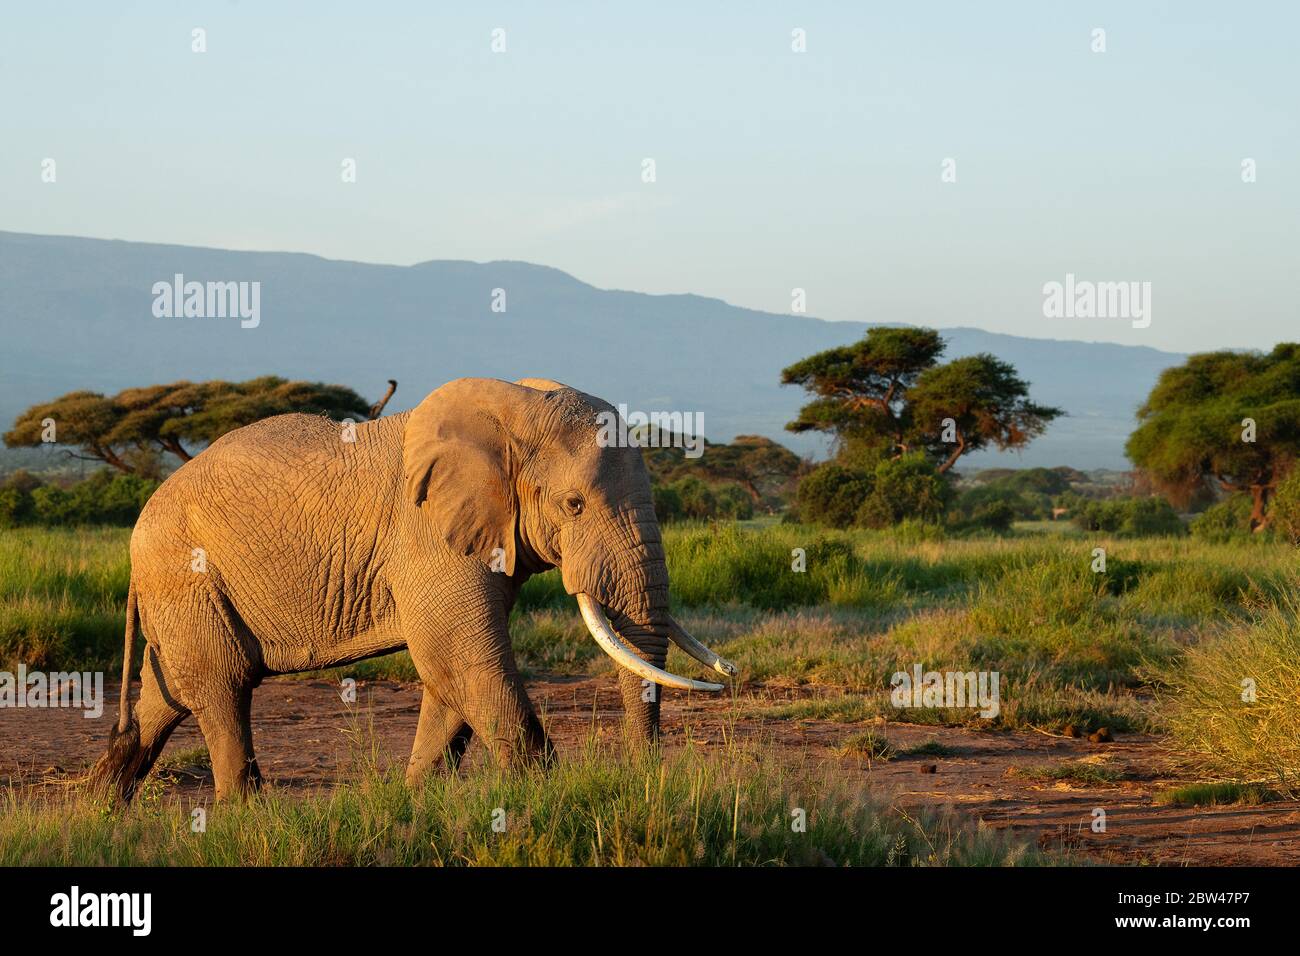 Elefante di toro africano alla luce del sole del mattino. L'Africa ospita molte delle più famose fauna del mondo nella cultura umana, come leoni‚ rinos‚ cheetahs. Foto Stock